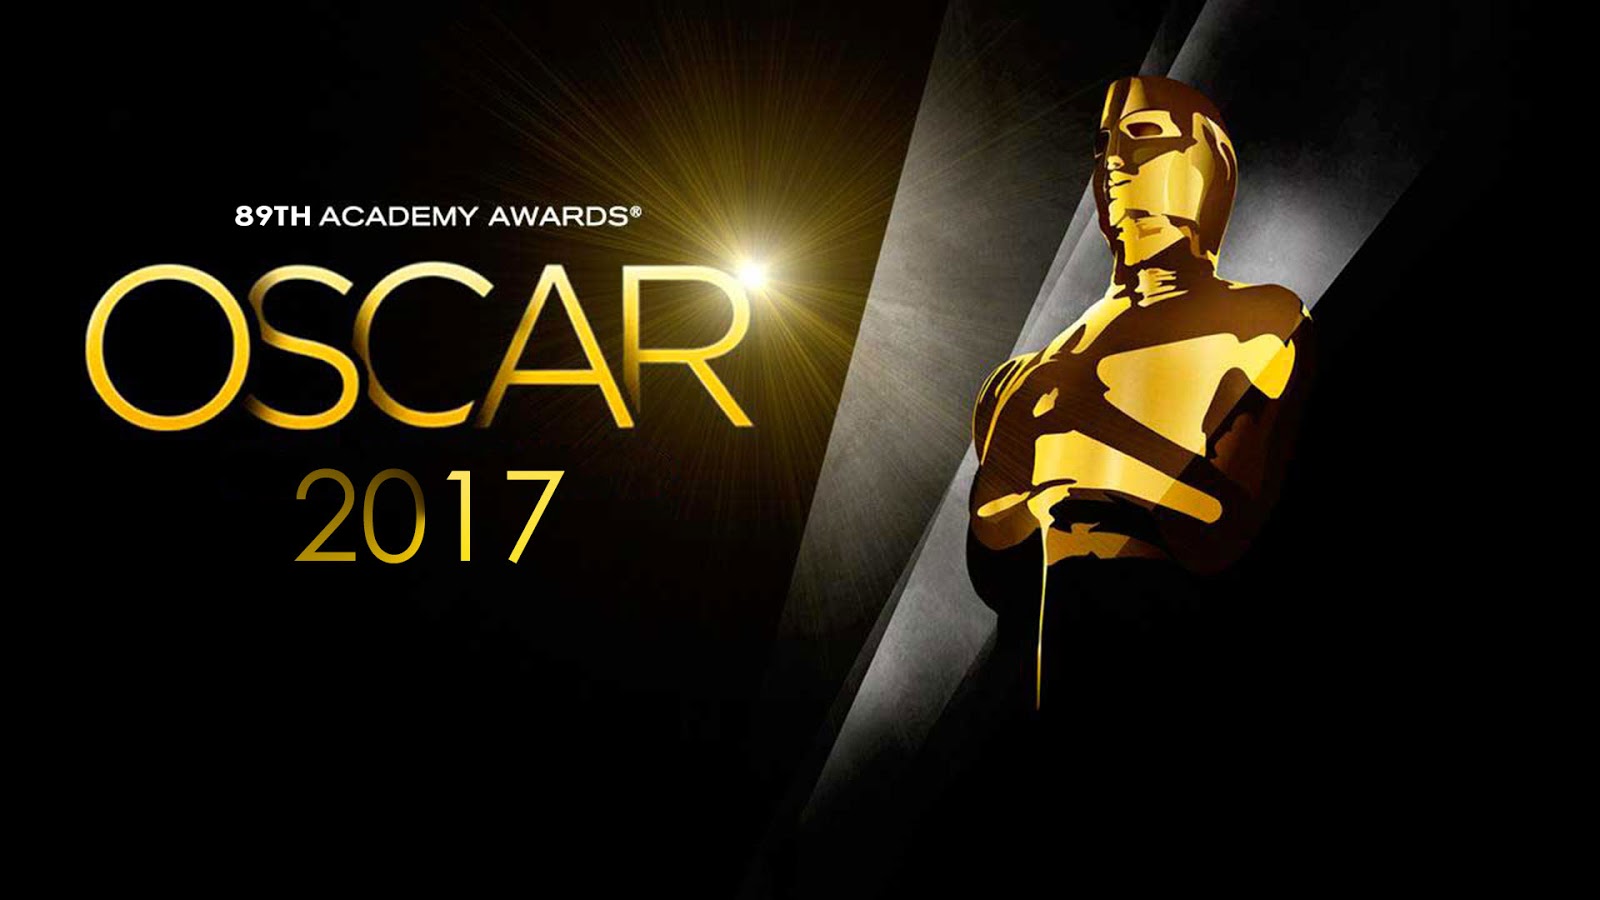 #Oscars2017 - The Academy